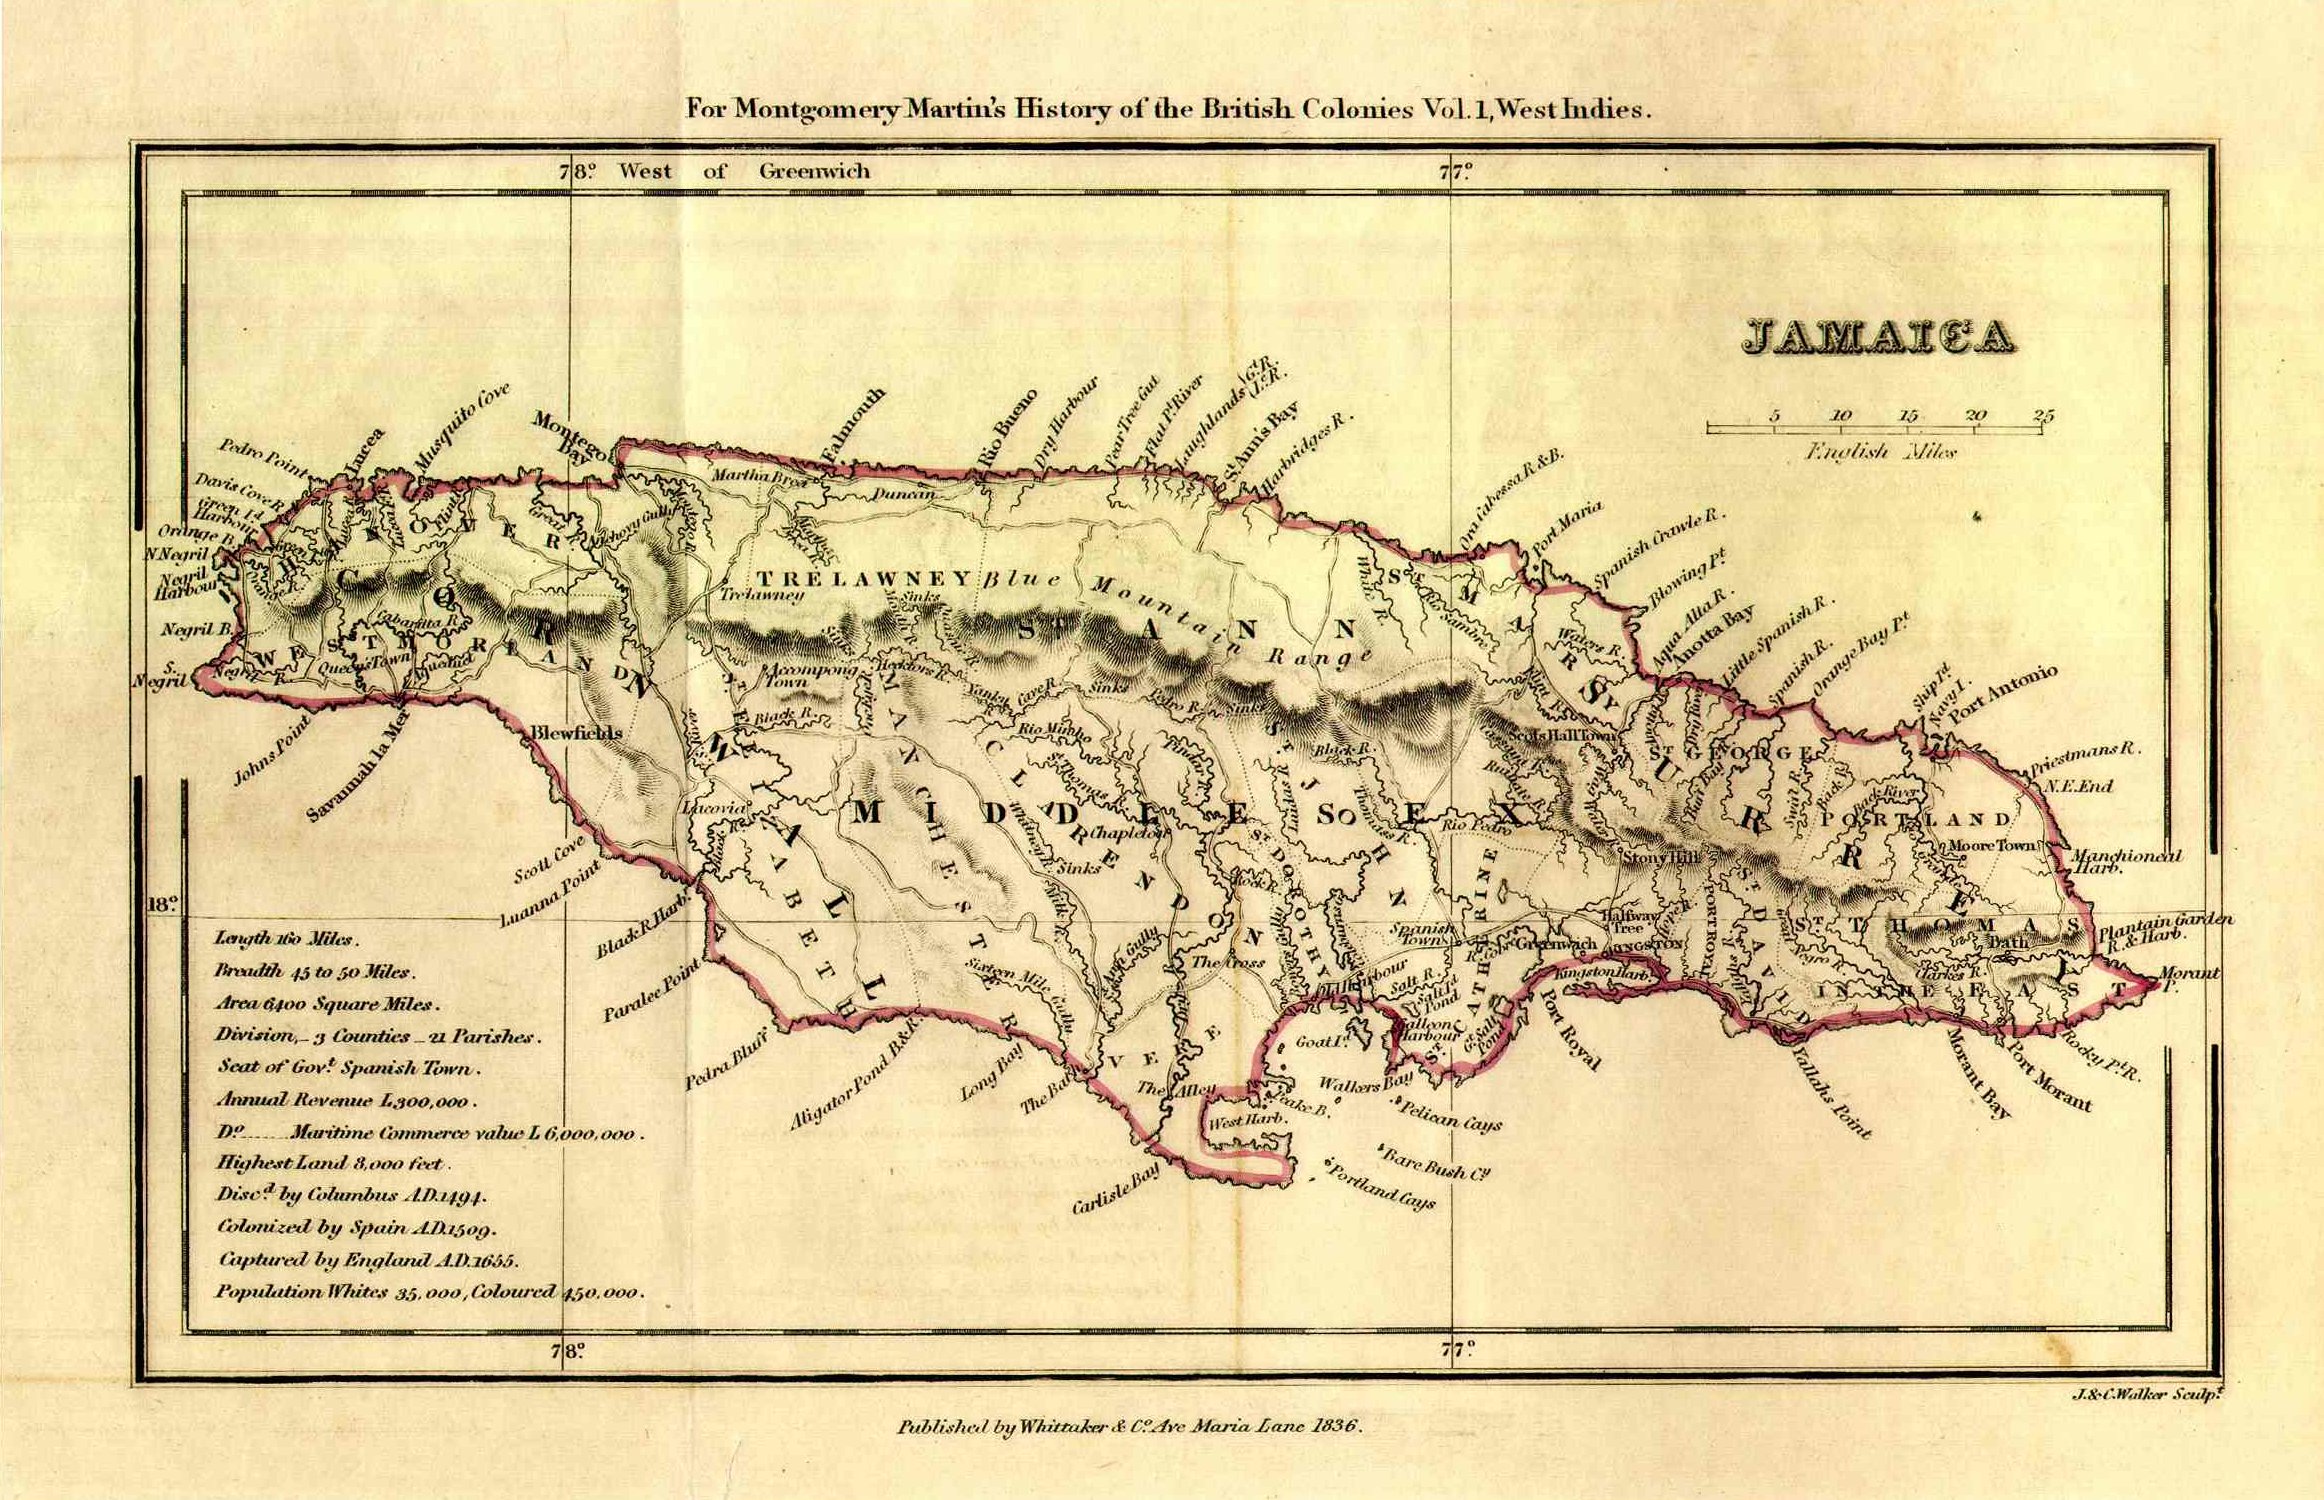 Walker's Jamaica of 1836